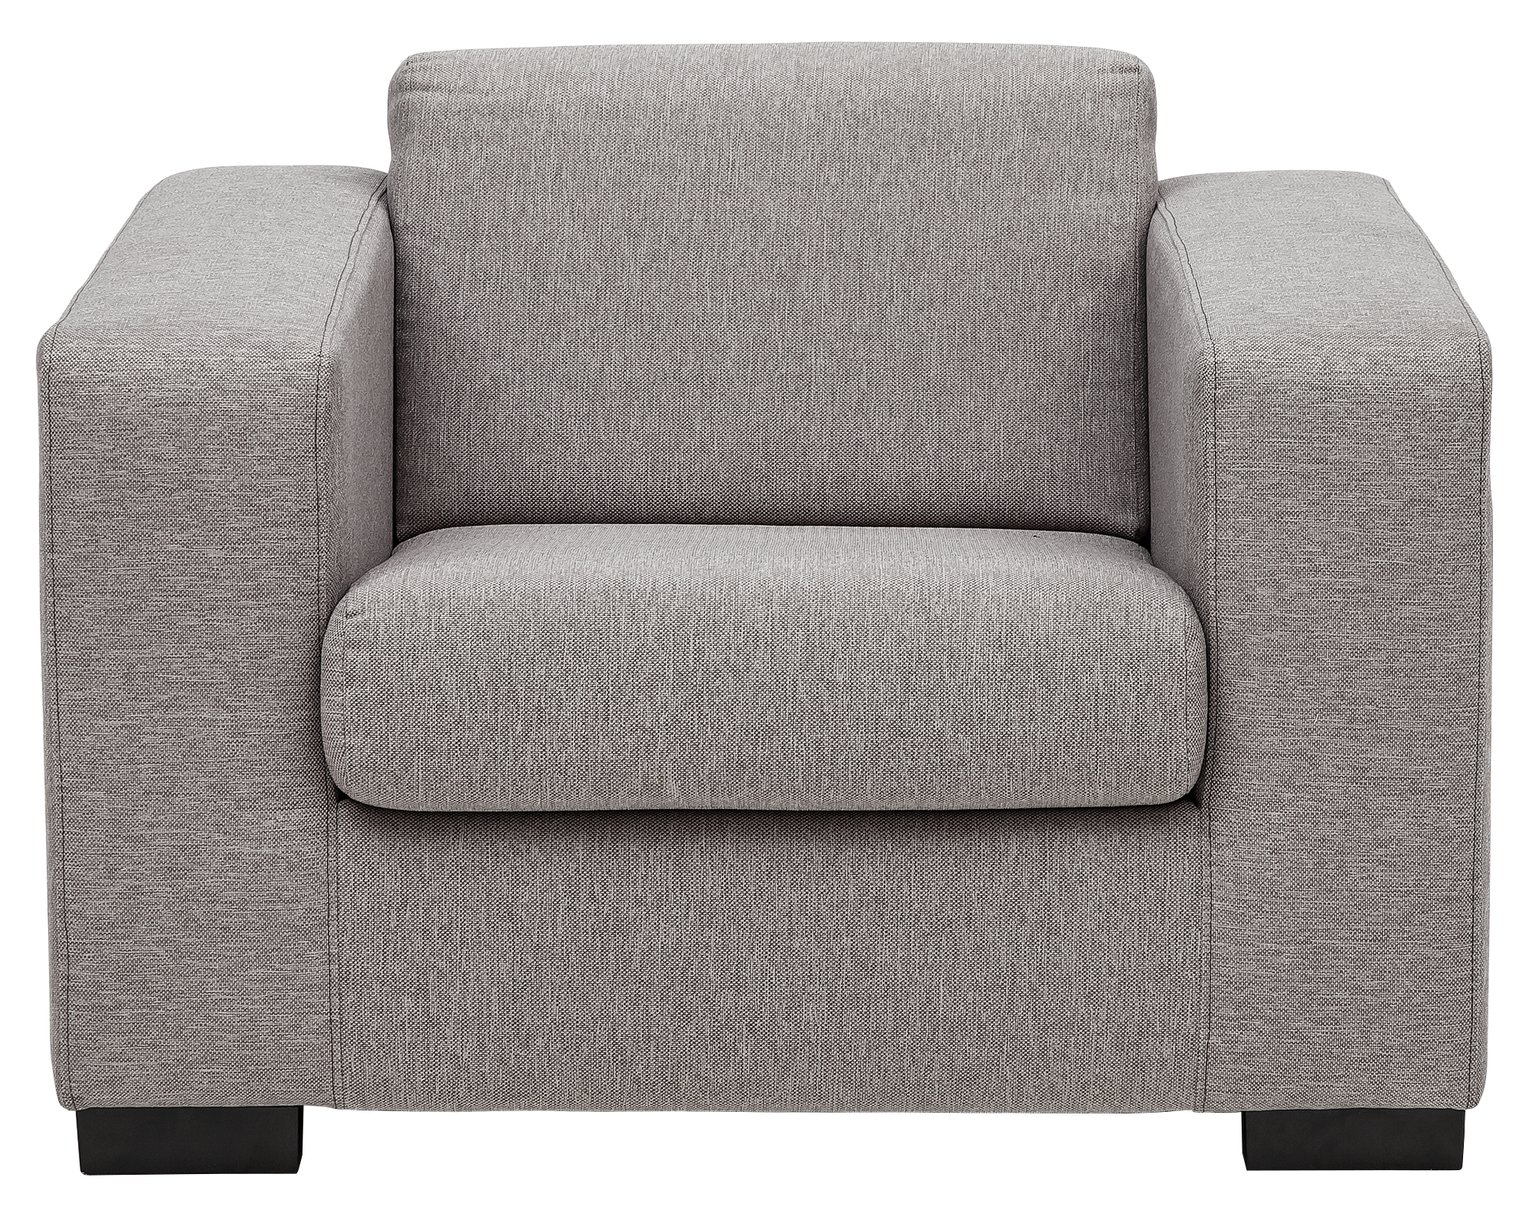 Argos Home Ava Fabric Armchair - Light Grey